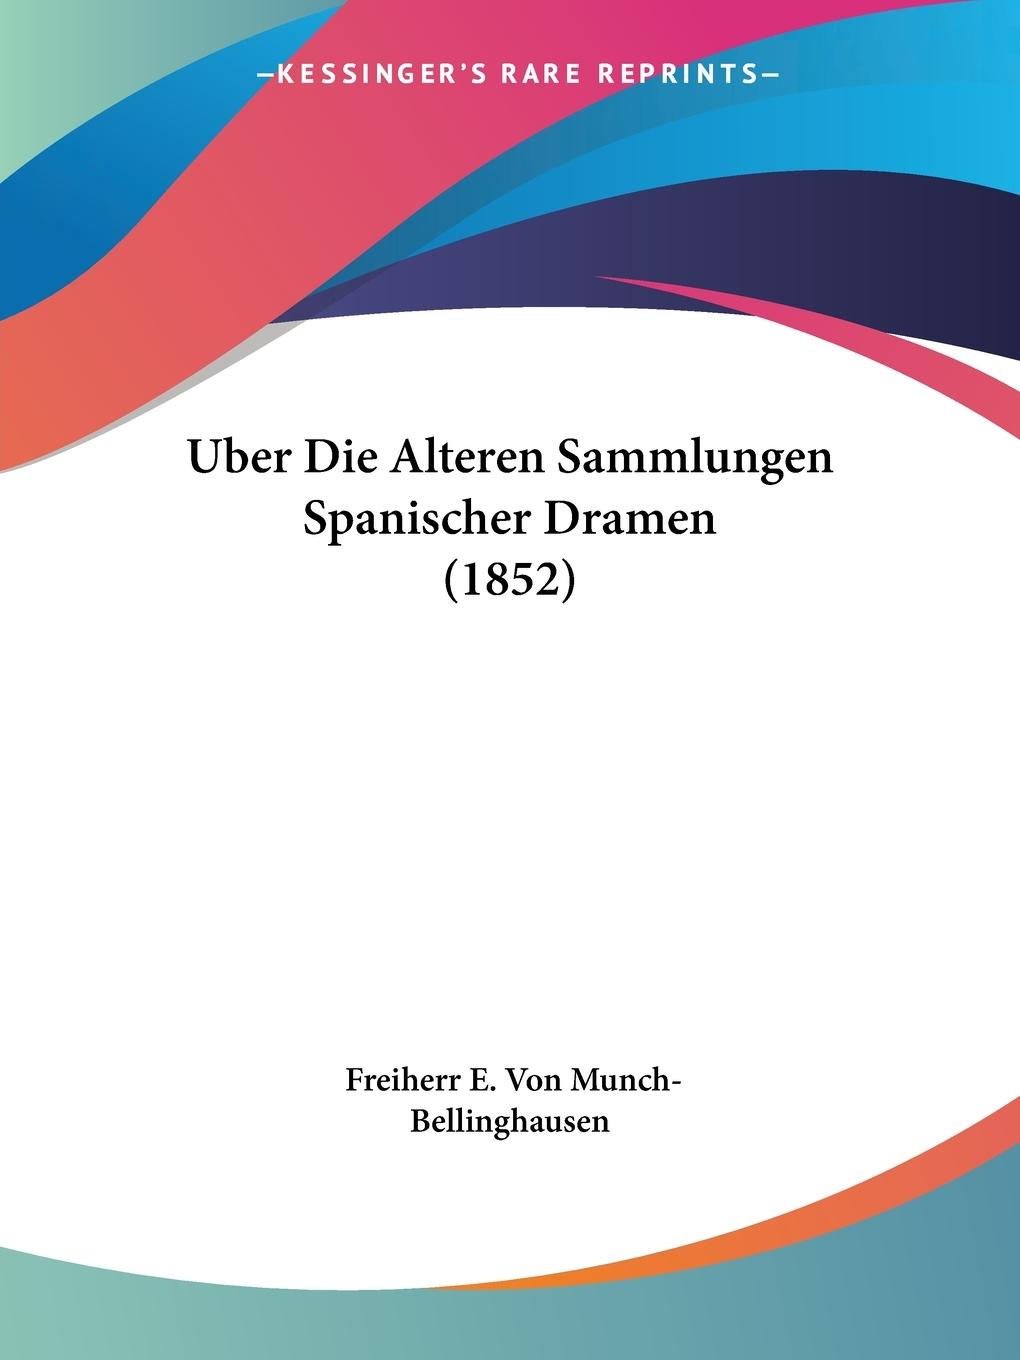 Uber Die Alteren Sammlungen Spanischer Dramen (1852) - Munch-Bellinghausen, Freiherr E. Von